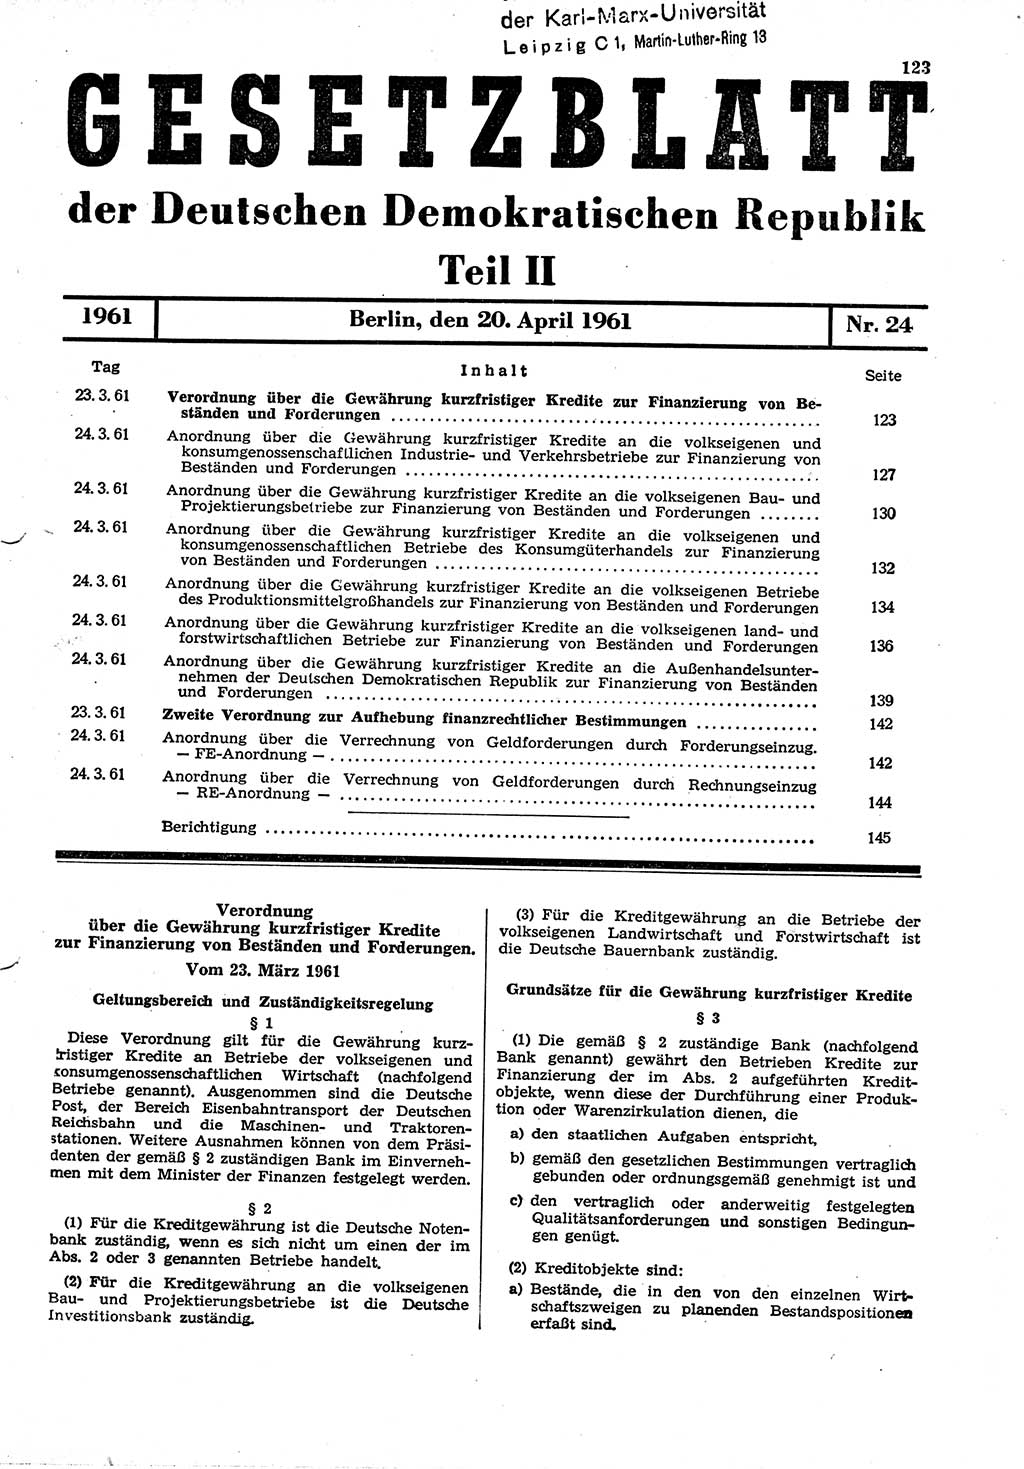 Gesetzblatt (GBl.) der Deutschen Demokratischen Republik (DDR) Teil ⅠⅠ 1961, Seite 123 (GBl. DDR ⅠⅠ 1961, S. 123)